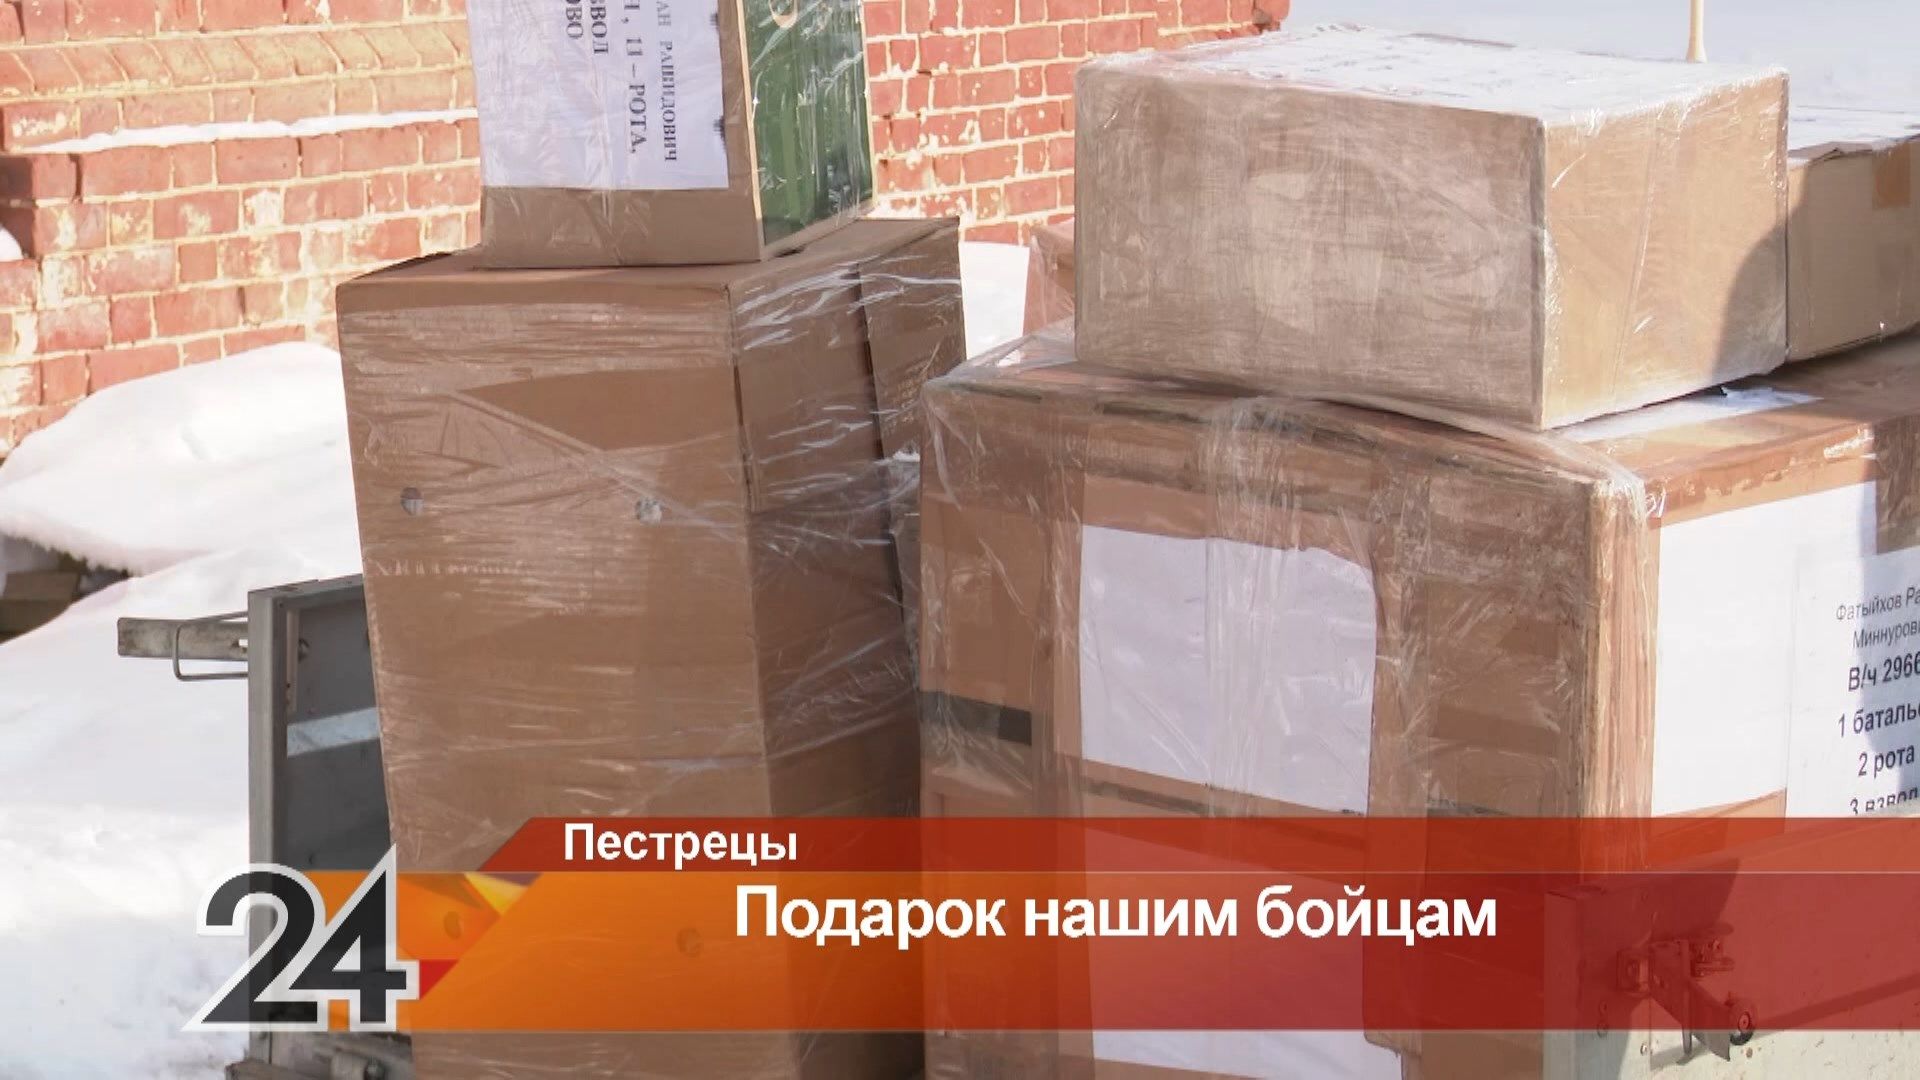 Люди активно отозвались: из Пестречинского района отправили гуманитарную помощь